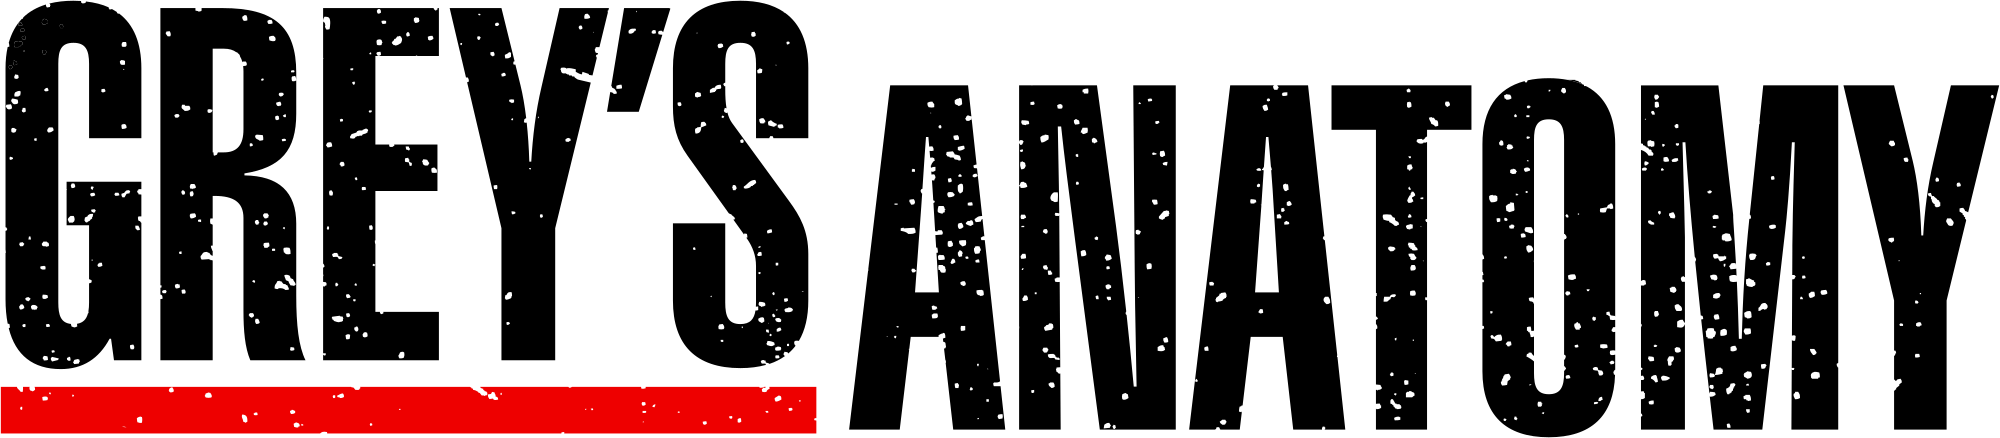 Resultado de imagem para grey's anatomy logo